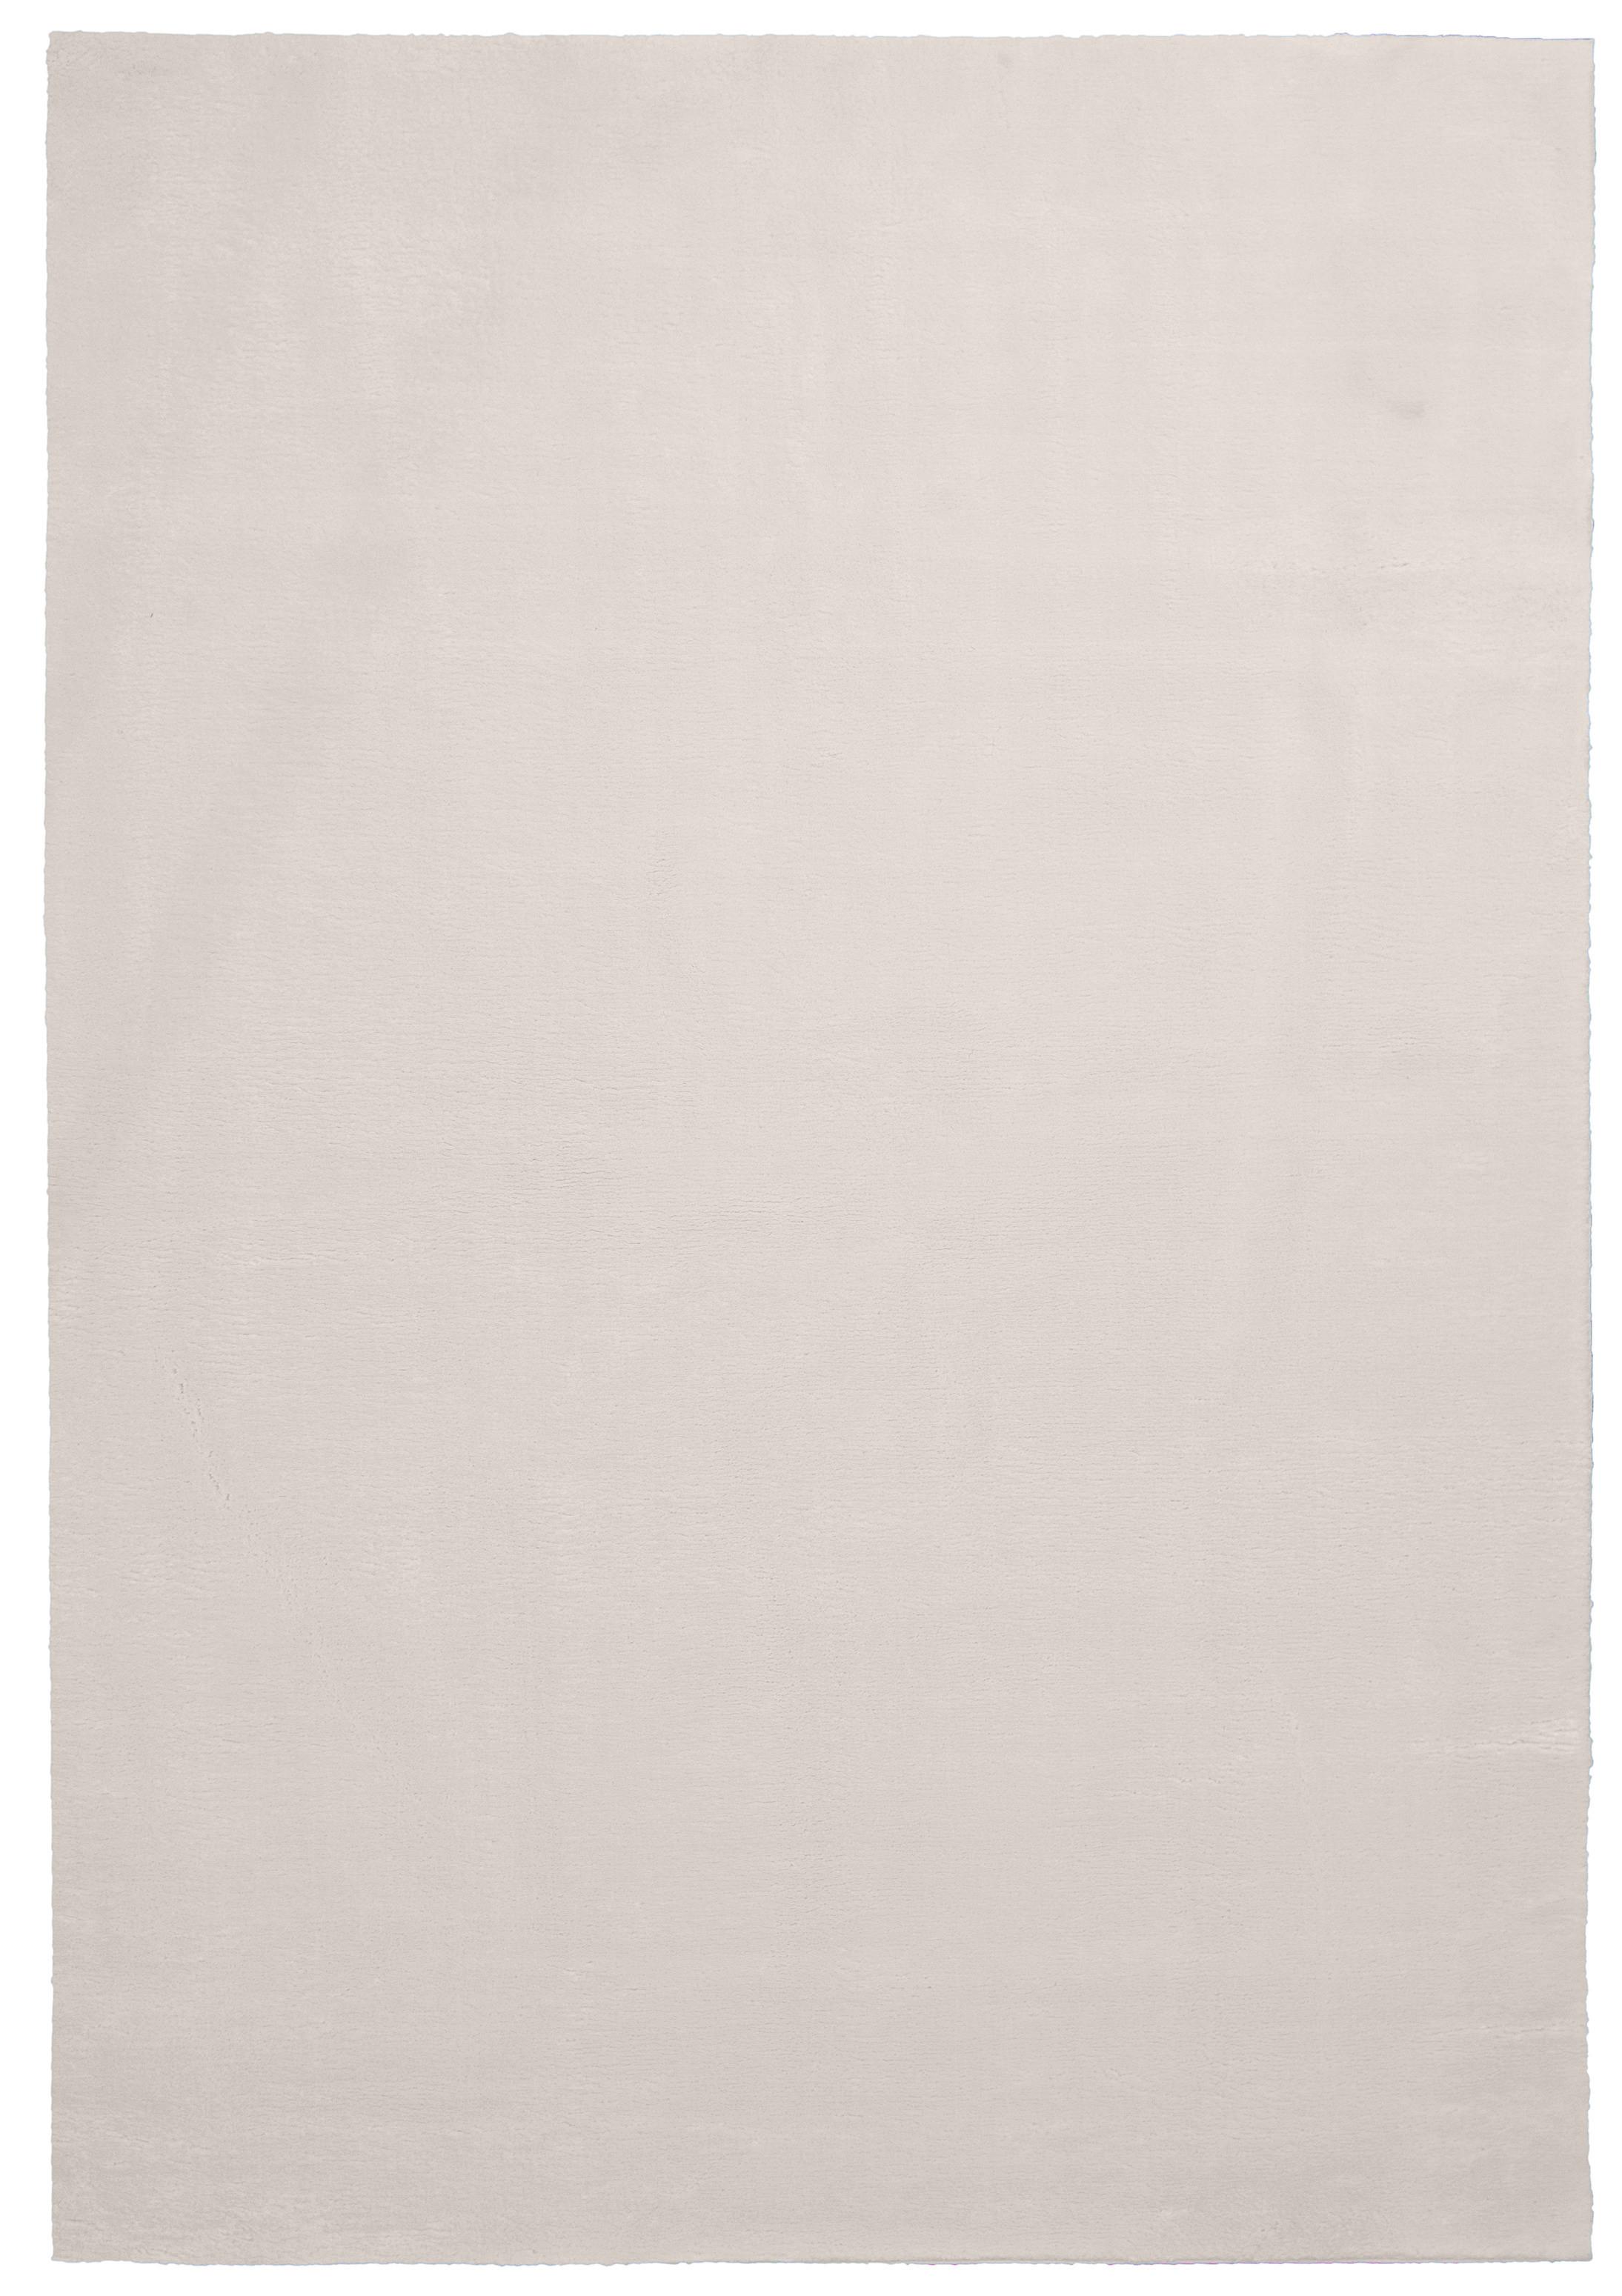 Tepih Visokog Flora Nemo 2 - krem, tekstil (60/180cm) - Modern Living